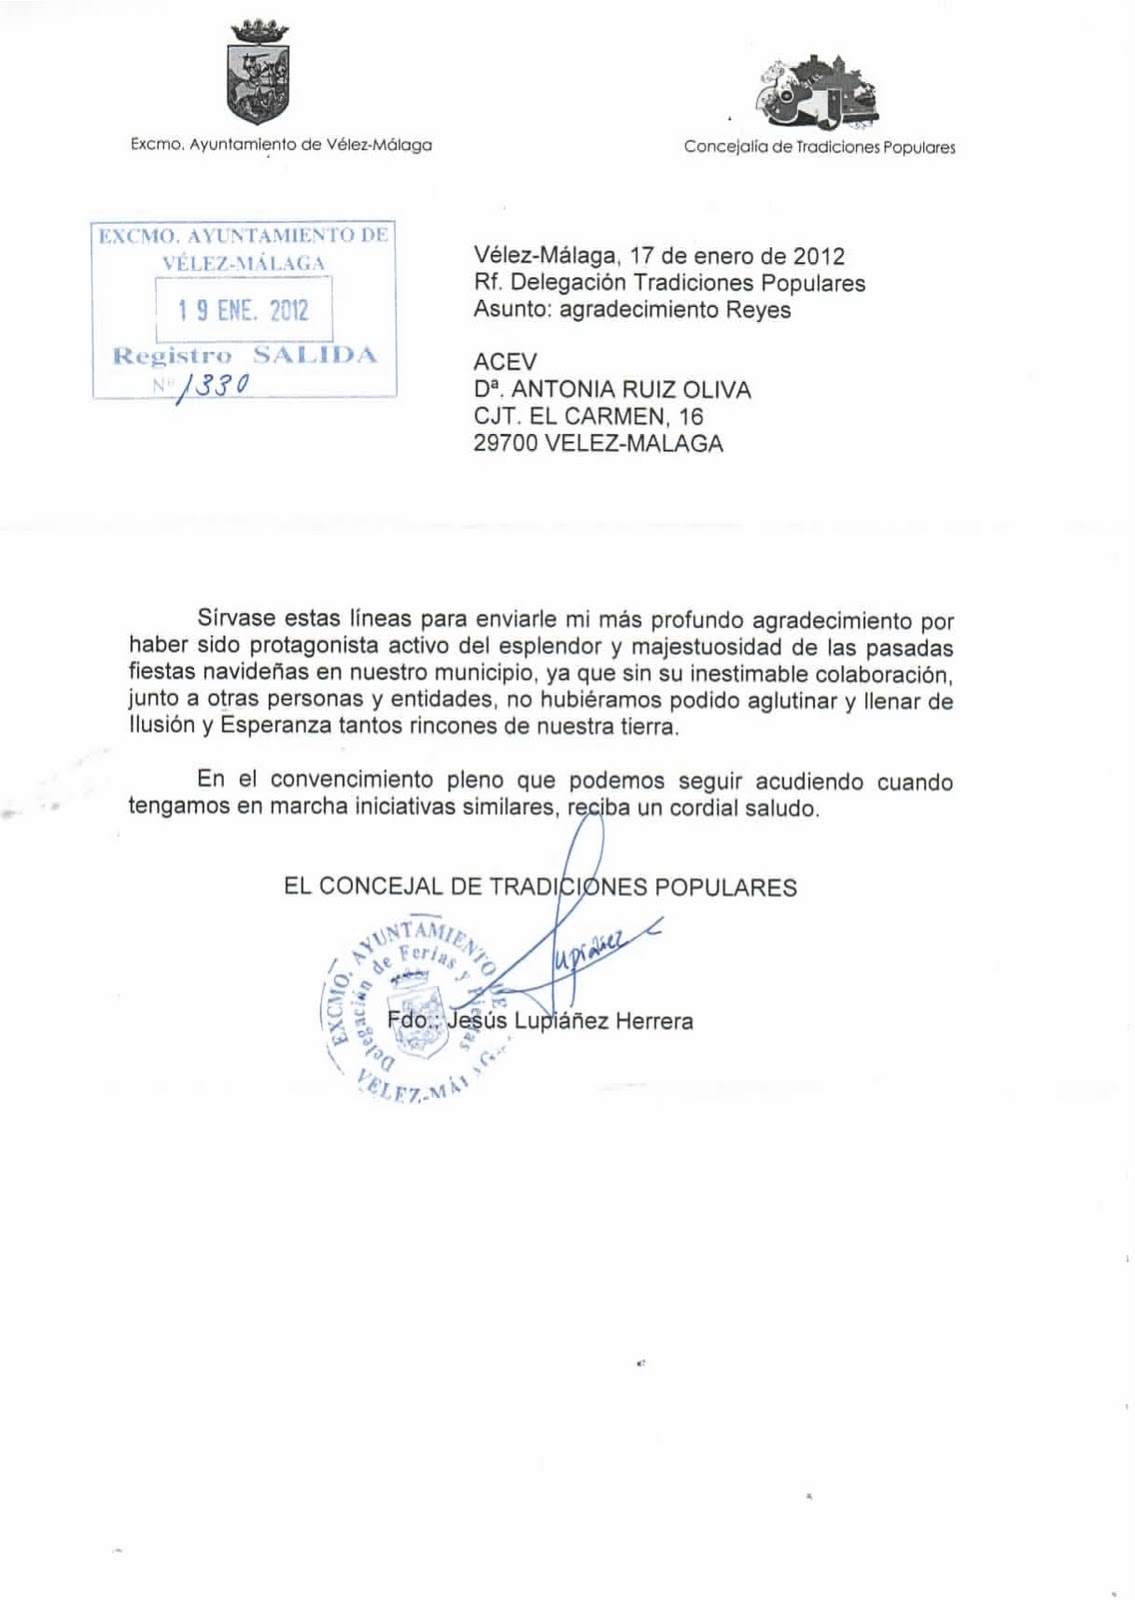 Asociación de Empresarios de Vélez Málaga - ACEV: Carta de 